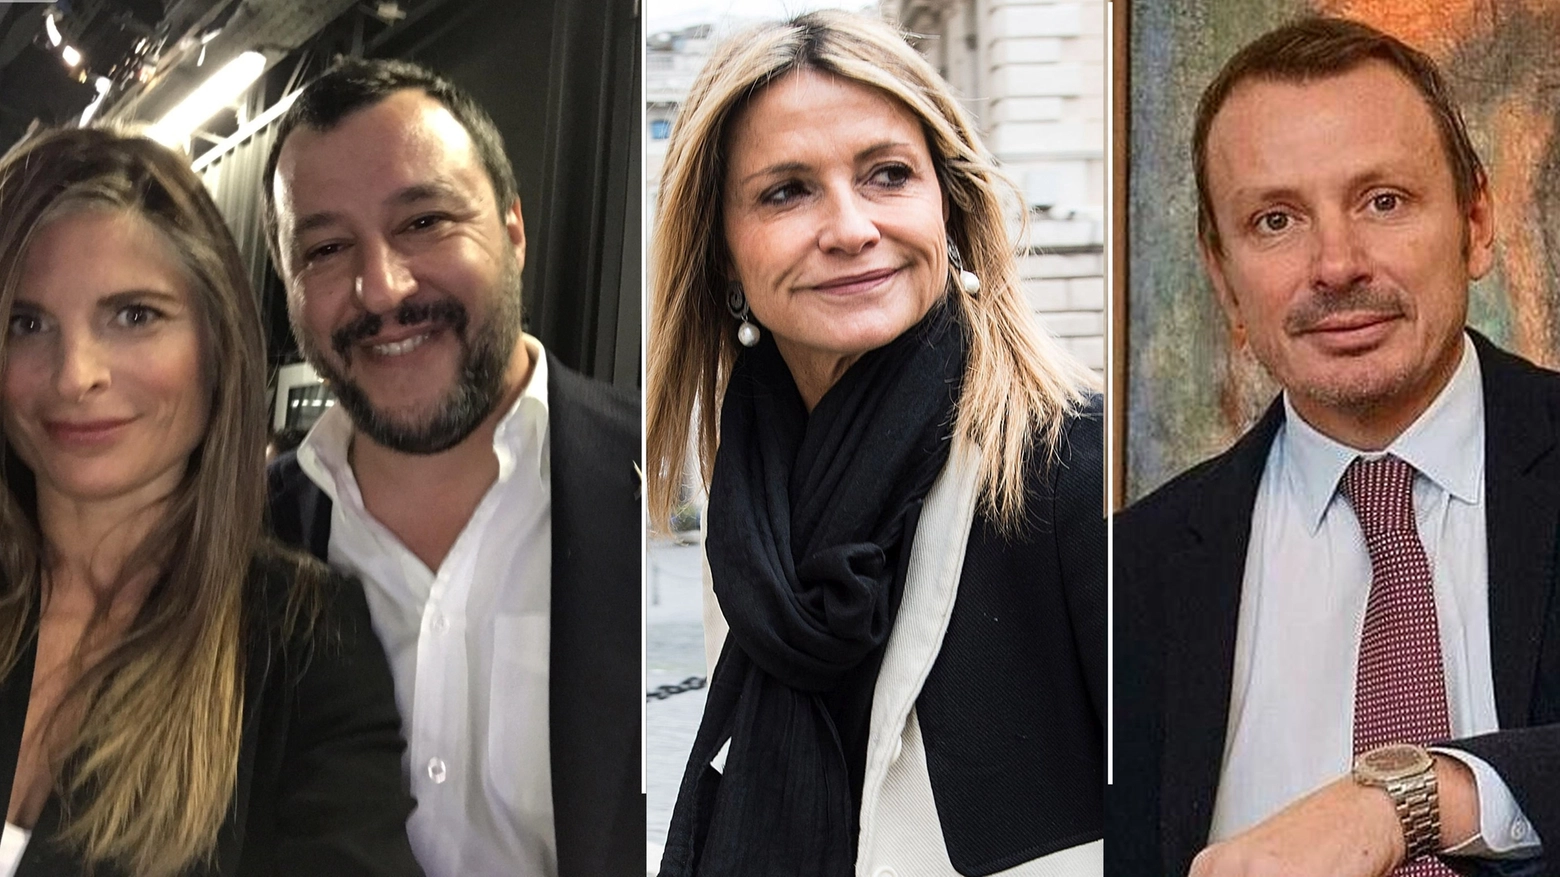 Laura Ravetto, Matteo Salvini, Federica Zanella, Maurizio Carrara (Ansa / ImagoE)